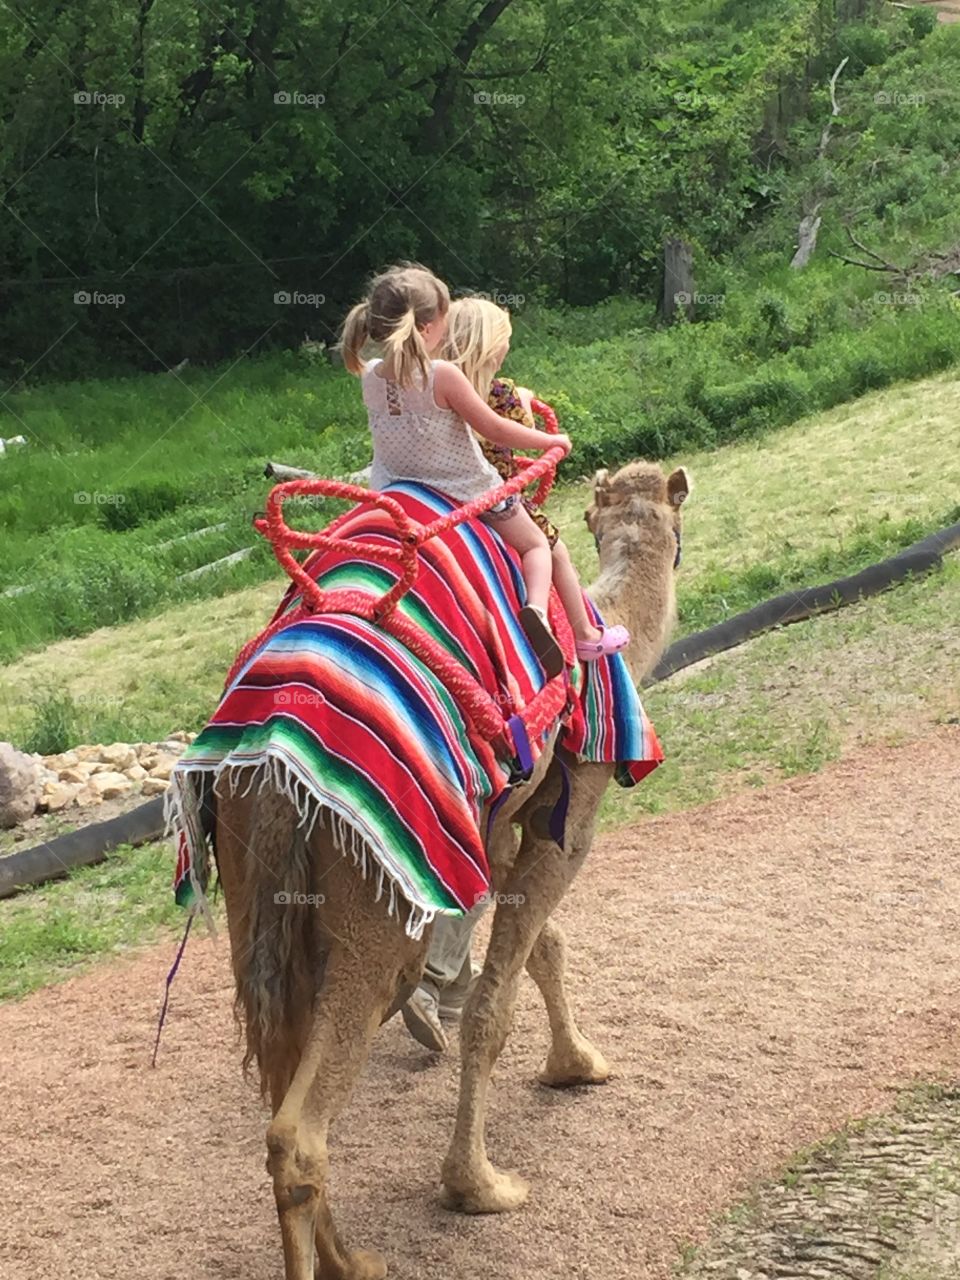 Camel fun